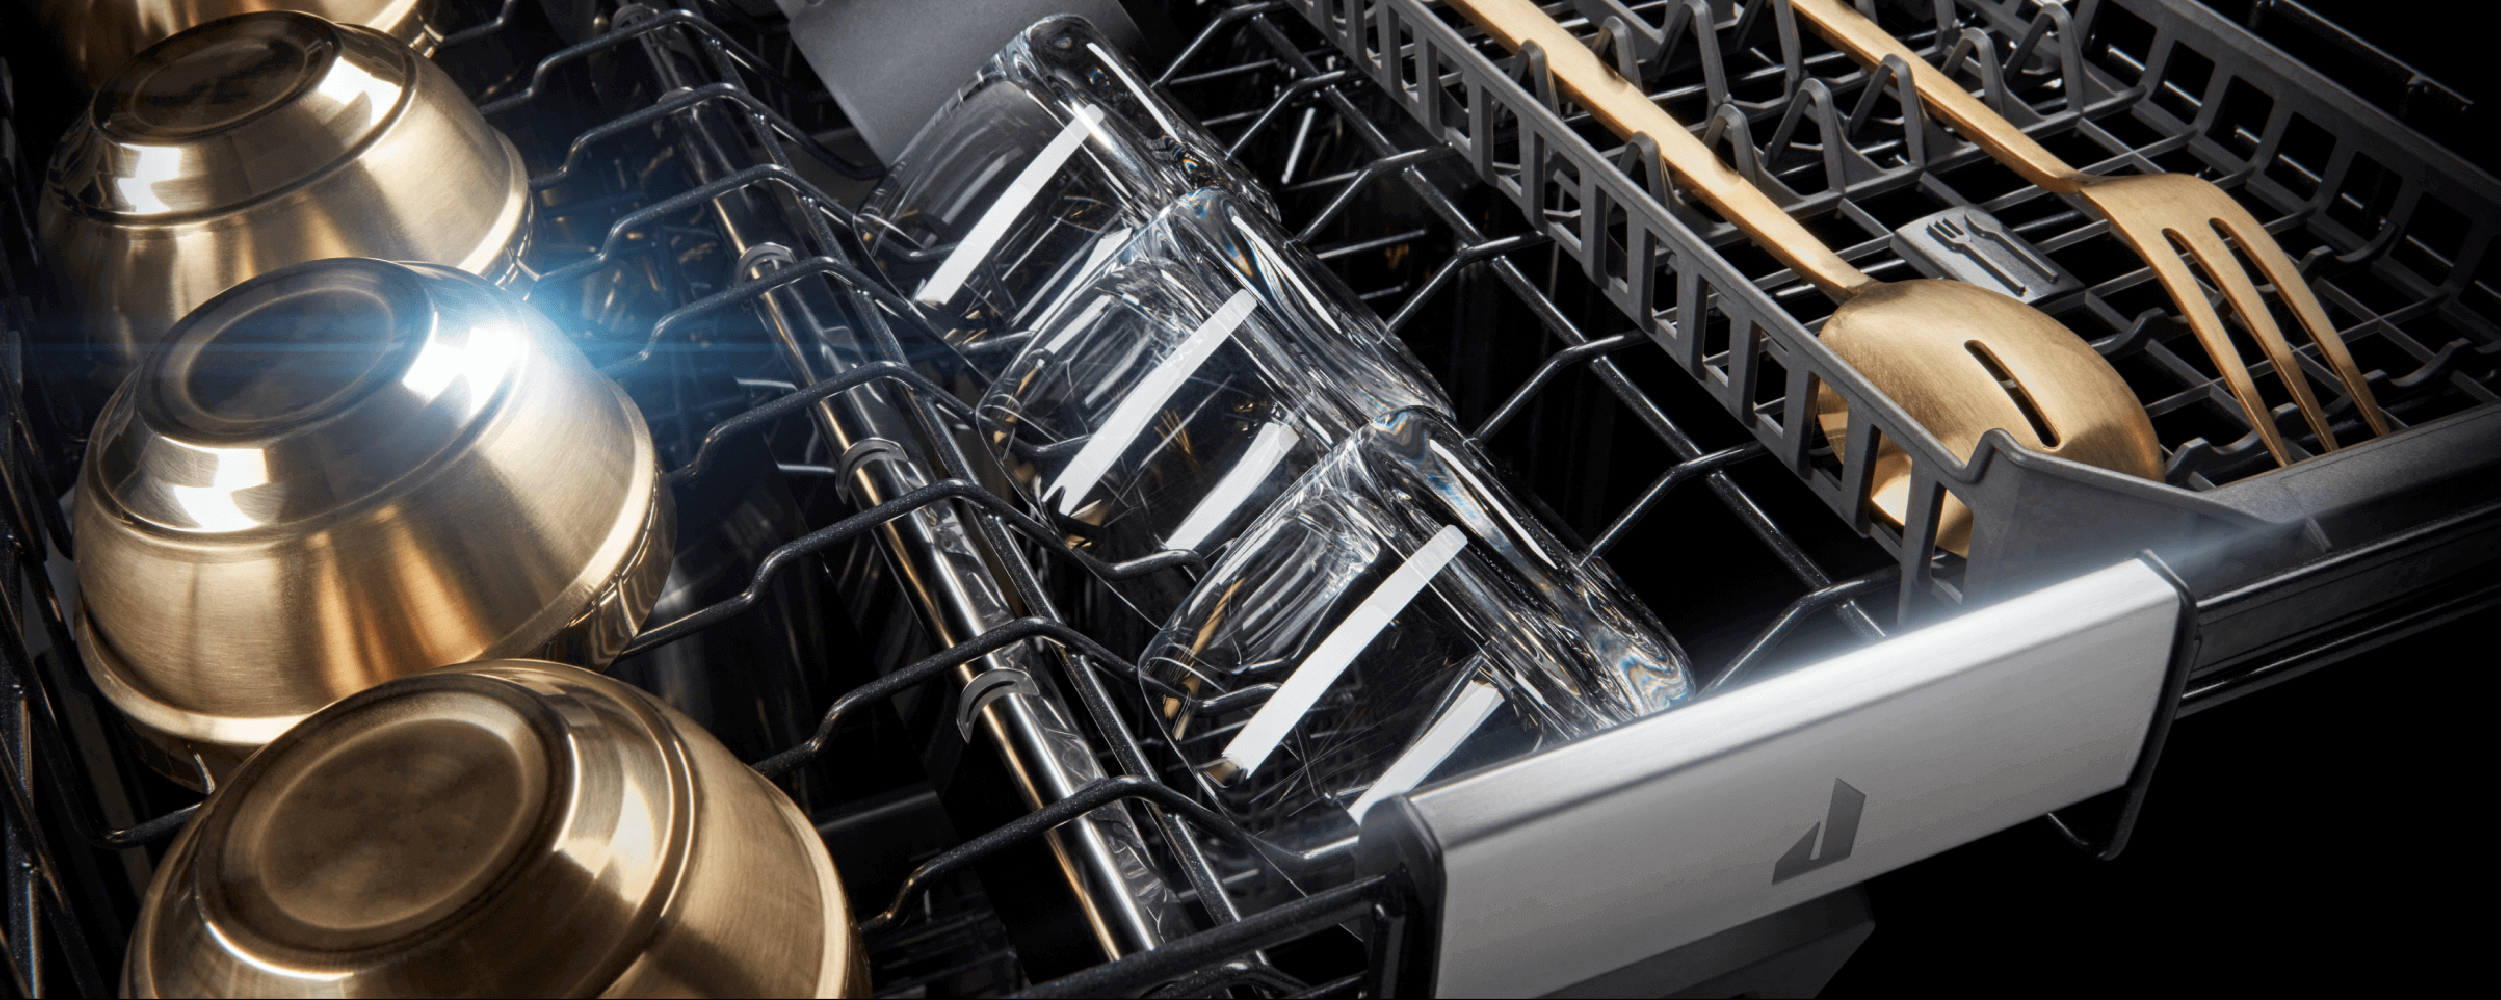 Third Rack Dishwasher